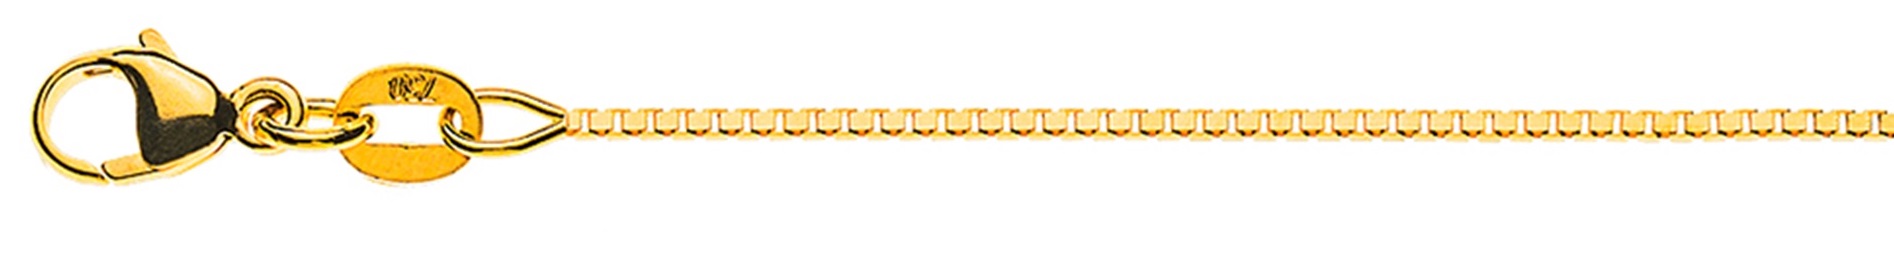 AURONOS Élégance Necklace Yellow gold 14K Venetian diamond necklace 50cm 0.9mm